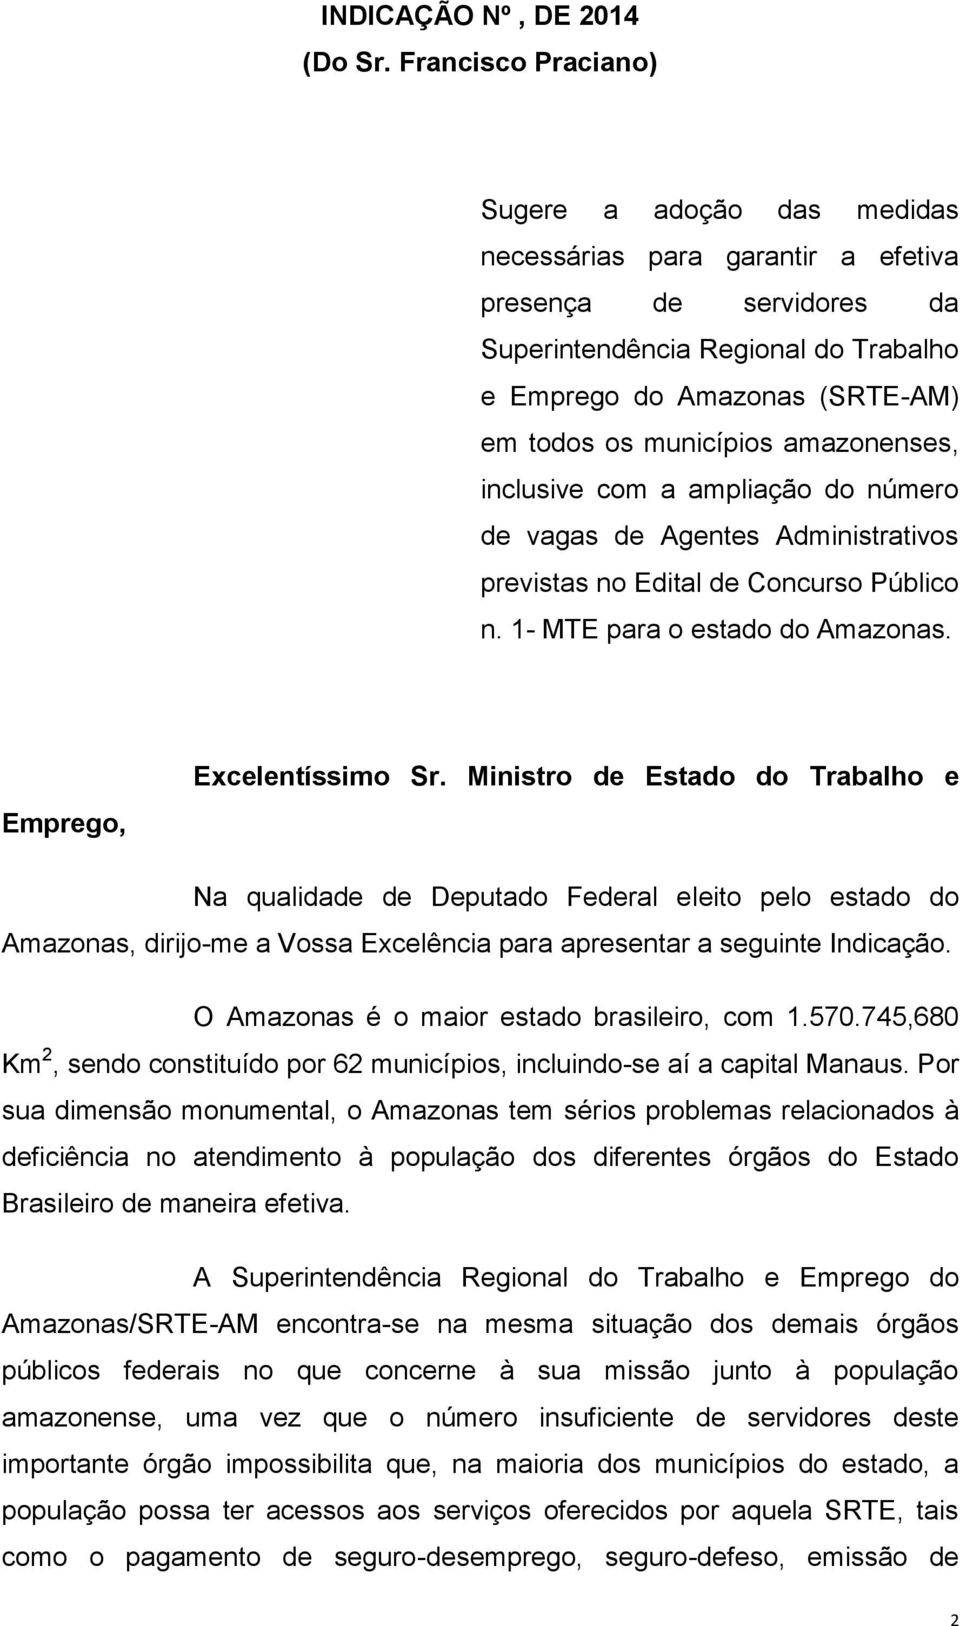 municípios amazonenses, inclusive com a ampliação do número de vagas de Agentes Administrativos previstas no Edital de Concurso Público n. 1- MTE para o estado do Amazonas. Emprego, Excelentíssimo Sr.